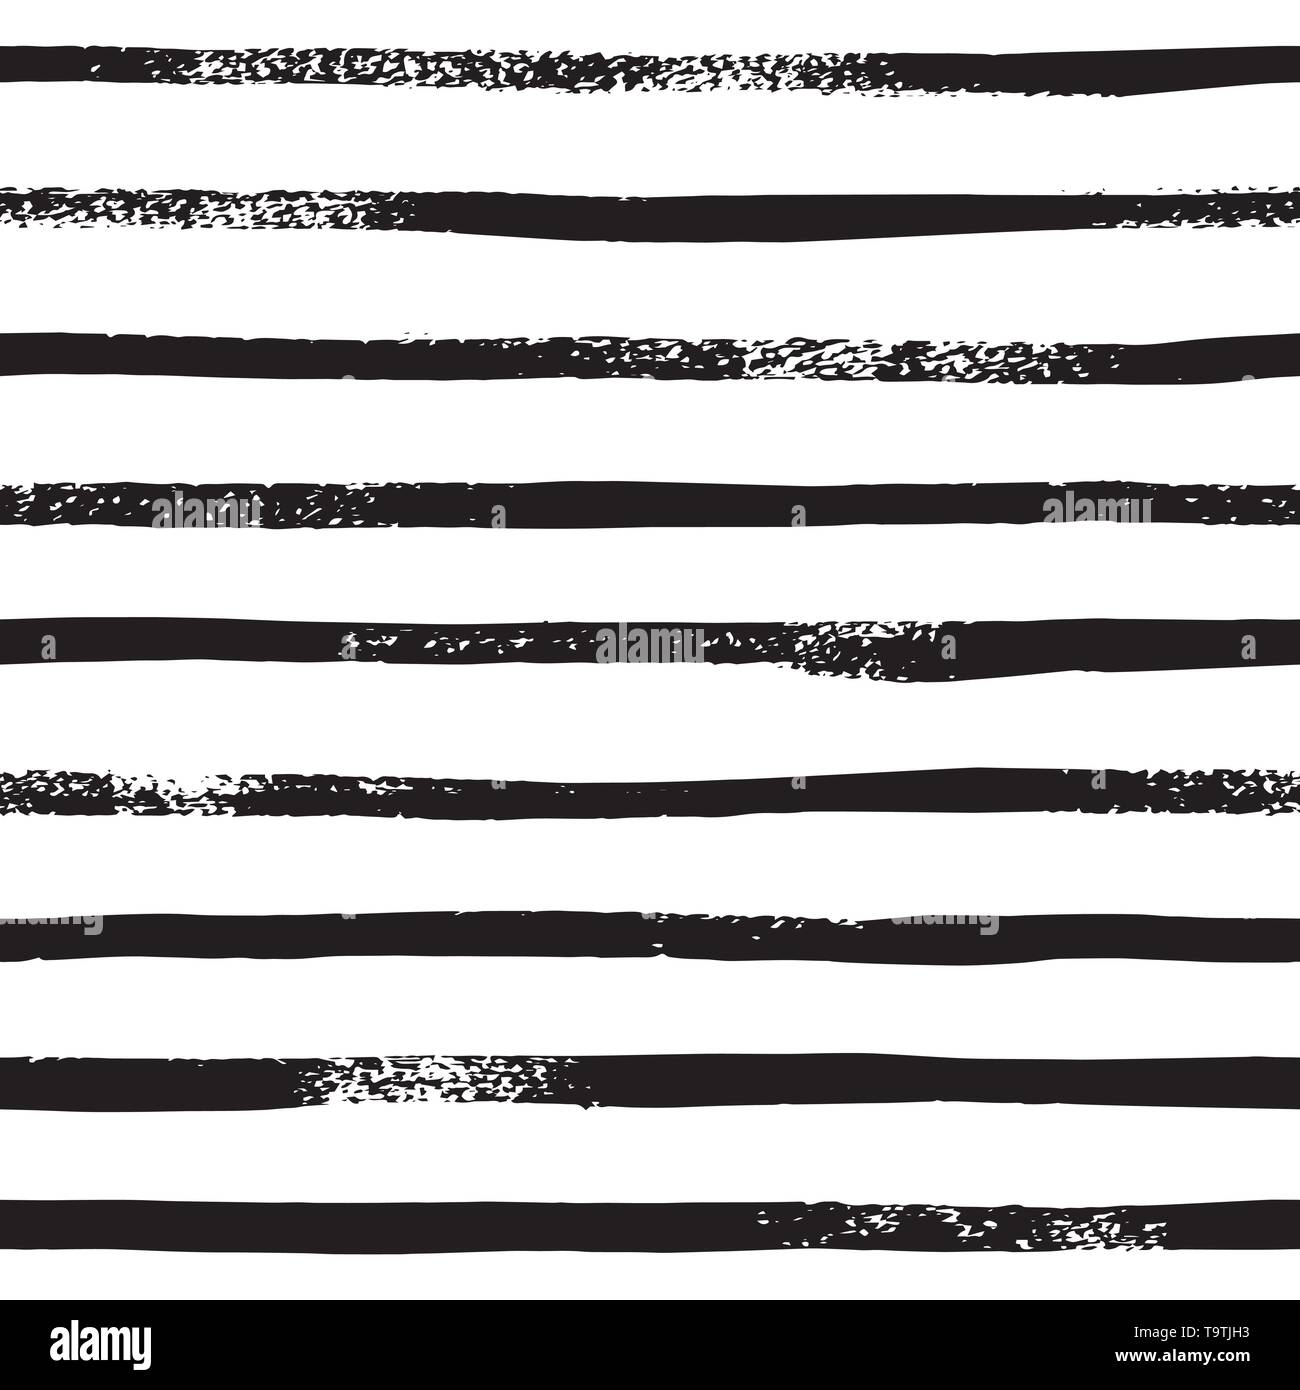 Stripe Line Pinsel nahtlose Muster in Schwarzweiß. Vektor grunge Hintergrund mit schwarzen Strichen. Hand horizontalen Streifen Textur gezeichnet. Stock Vektor